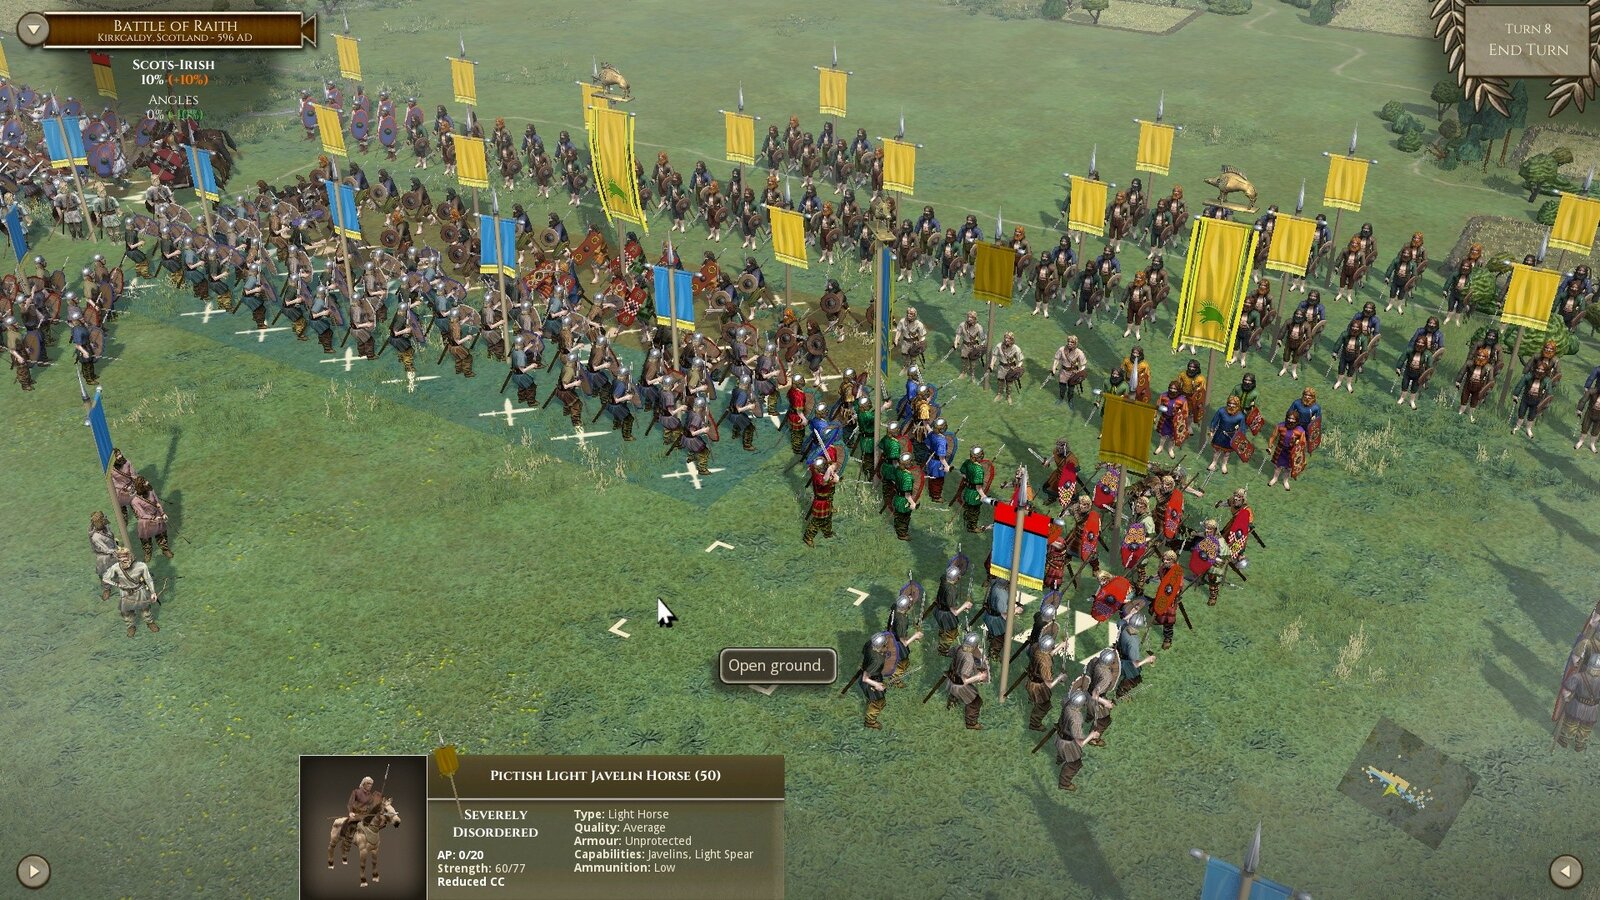 Field of Glory II - Age of Belisarius